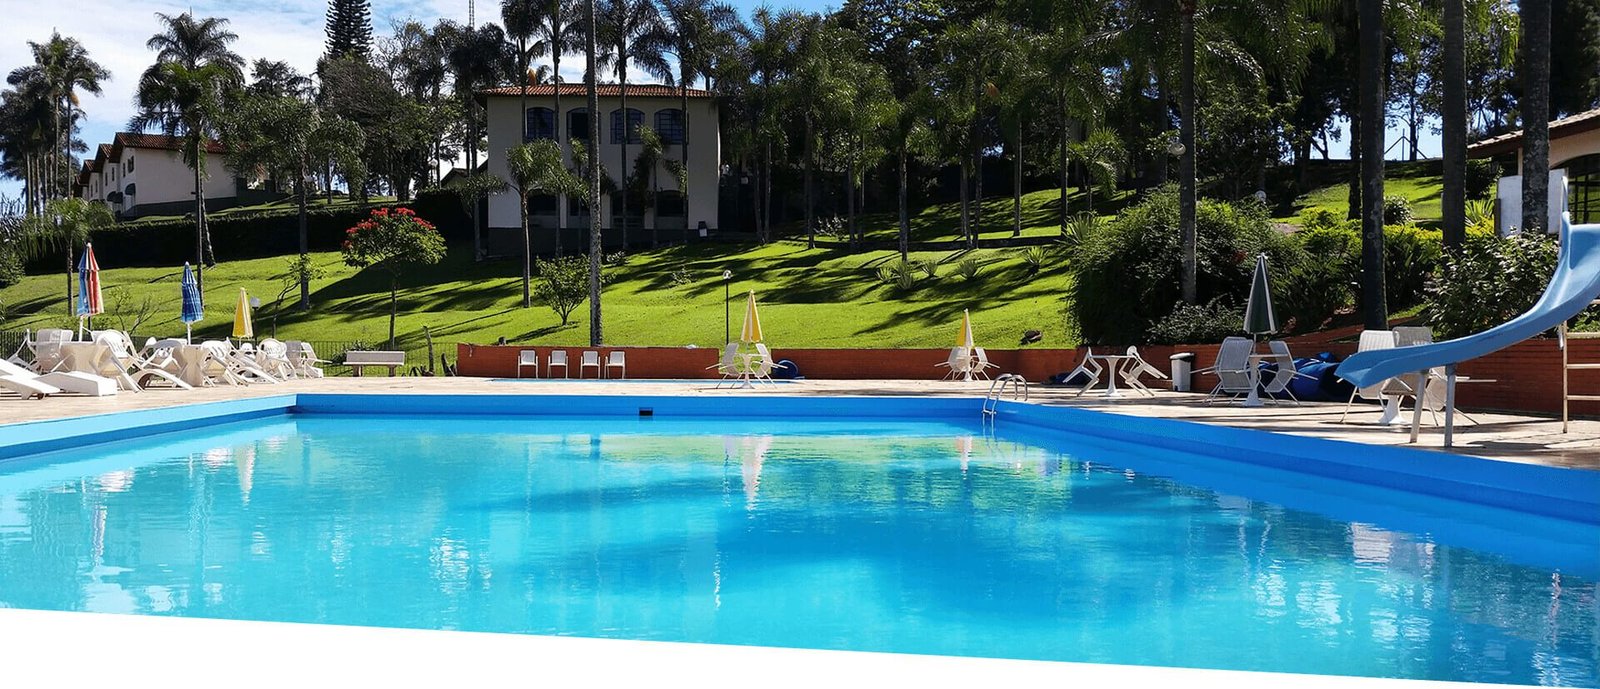 Hotel Fazenda São Matheus - Serra Negra - Hotéis Fazenda perto de SP